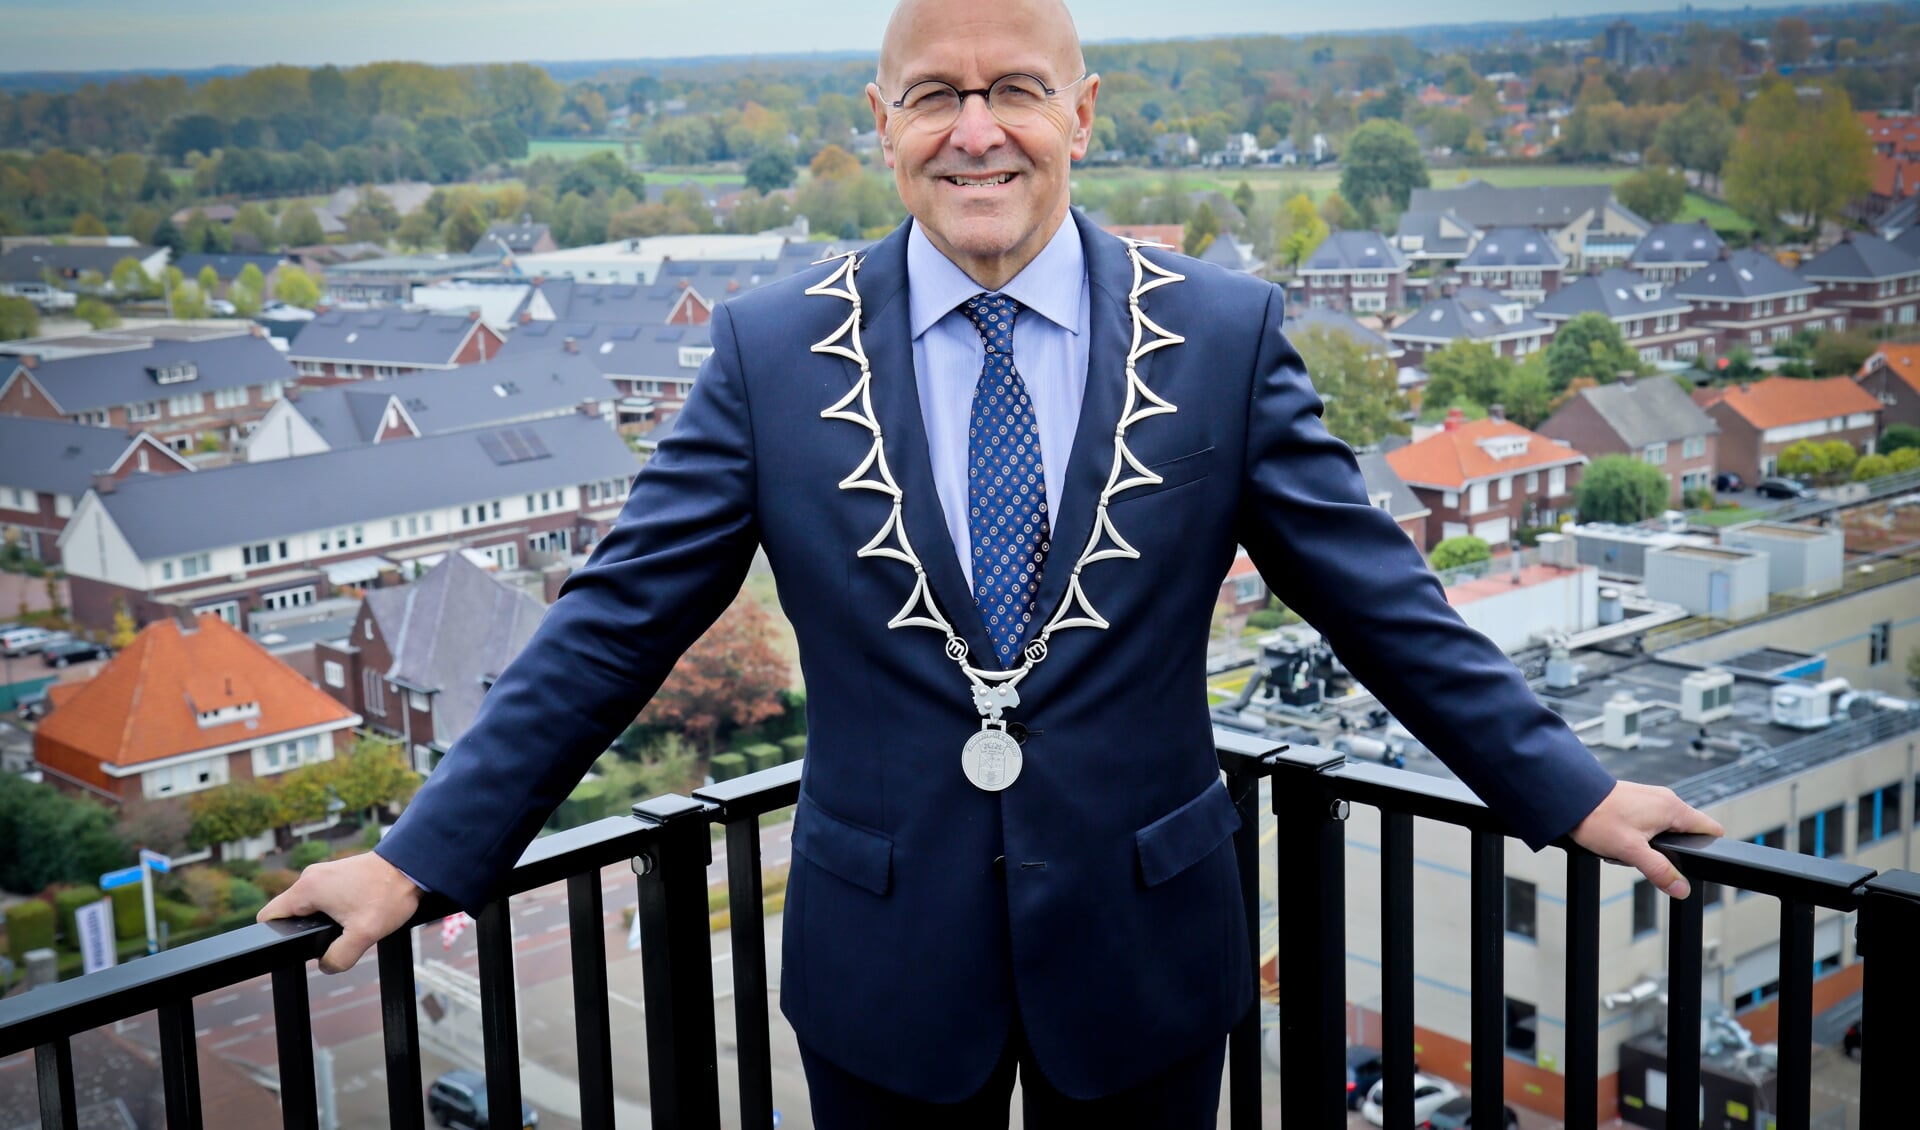 Burgemeester Van Rooij kondigde afgelopen week aan extra’s controles te houden in de horeca en bij sportverenigingen.